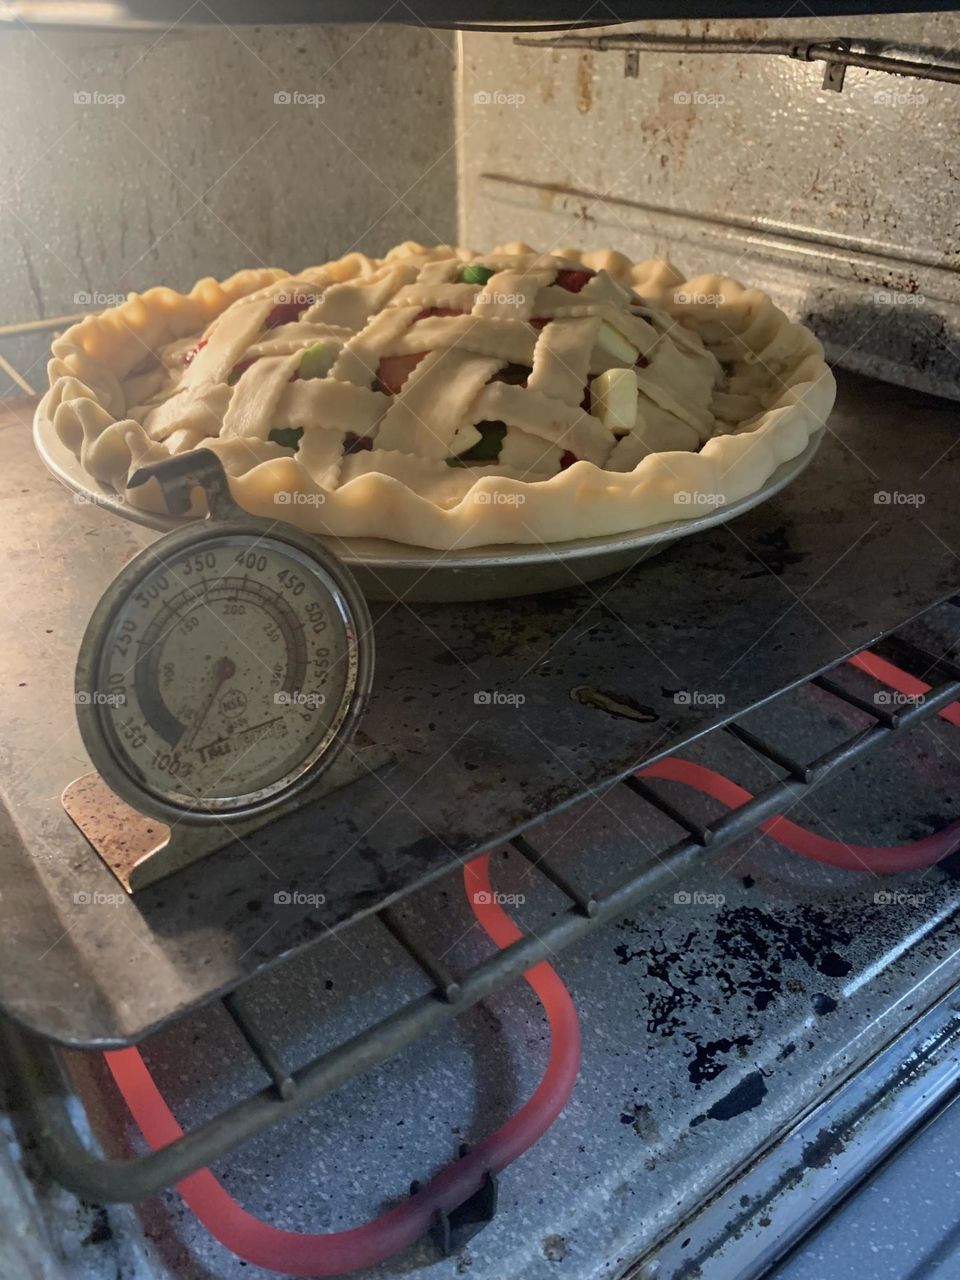 Pie baking in oven